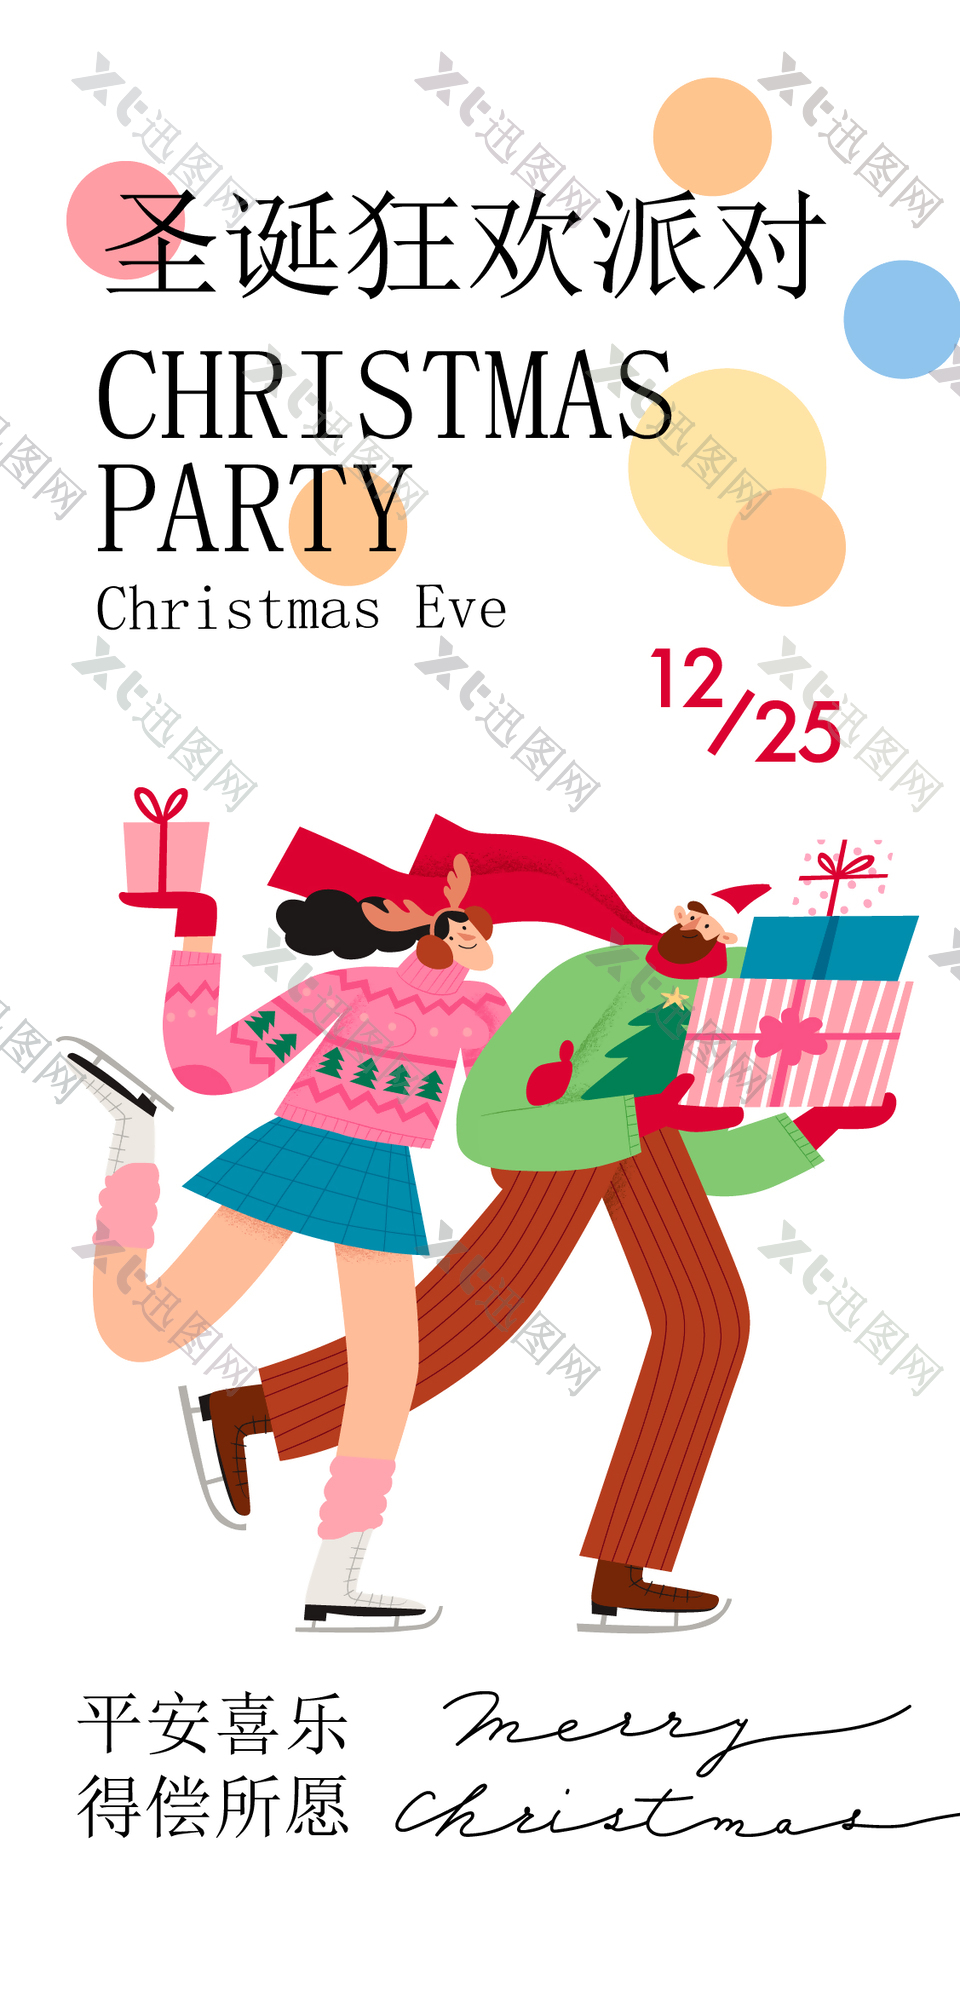 扁平风人物插画圣诞狂欢派对活动海报